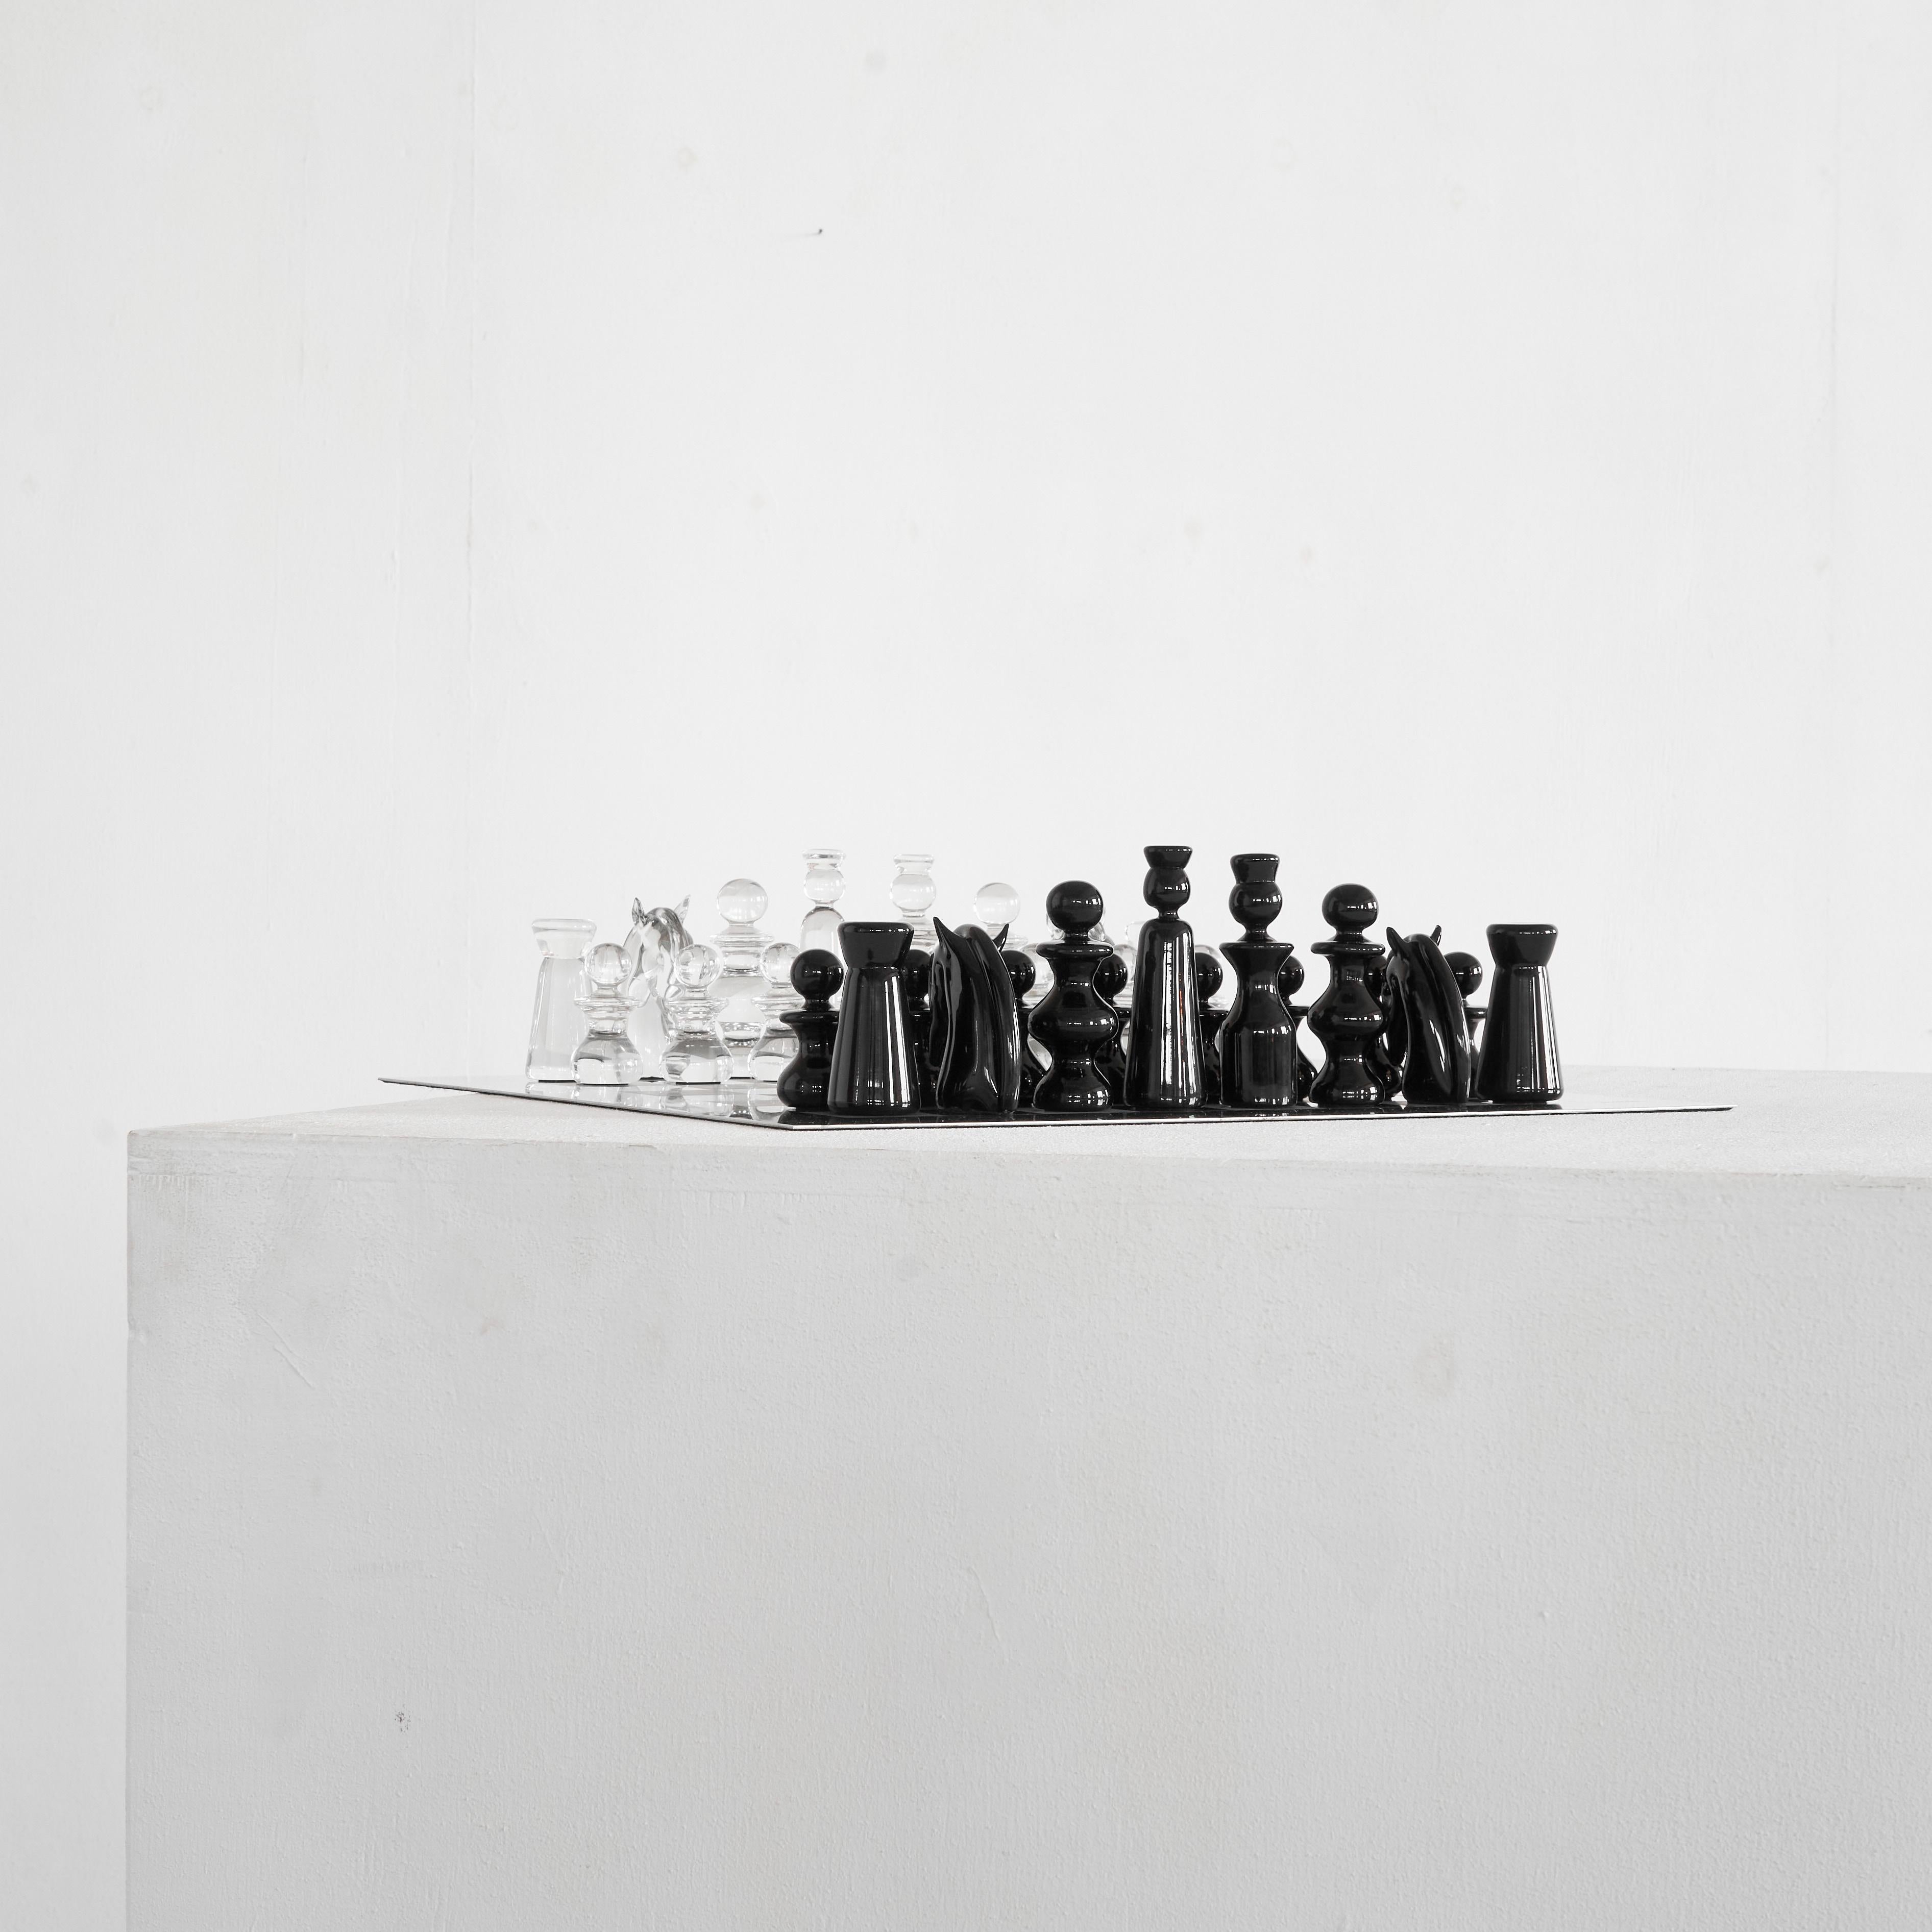 Jeu d'échecs ultra rare en verre de Murano de Gino Cenedese, Venise, Italie, années 1960.

Il s'agit d'un jeu d'échecs en verre de Murano extrêmement rare, réalisé par Gino Cenedese, l'un des célèbres artistes verriers de Venise, en Italie. 

Le jeu